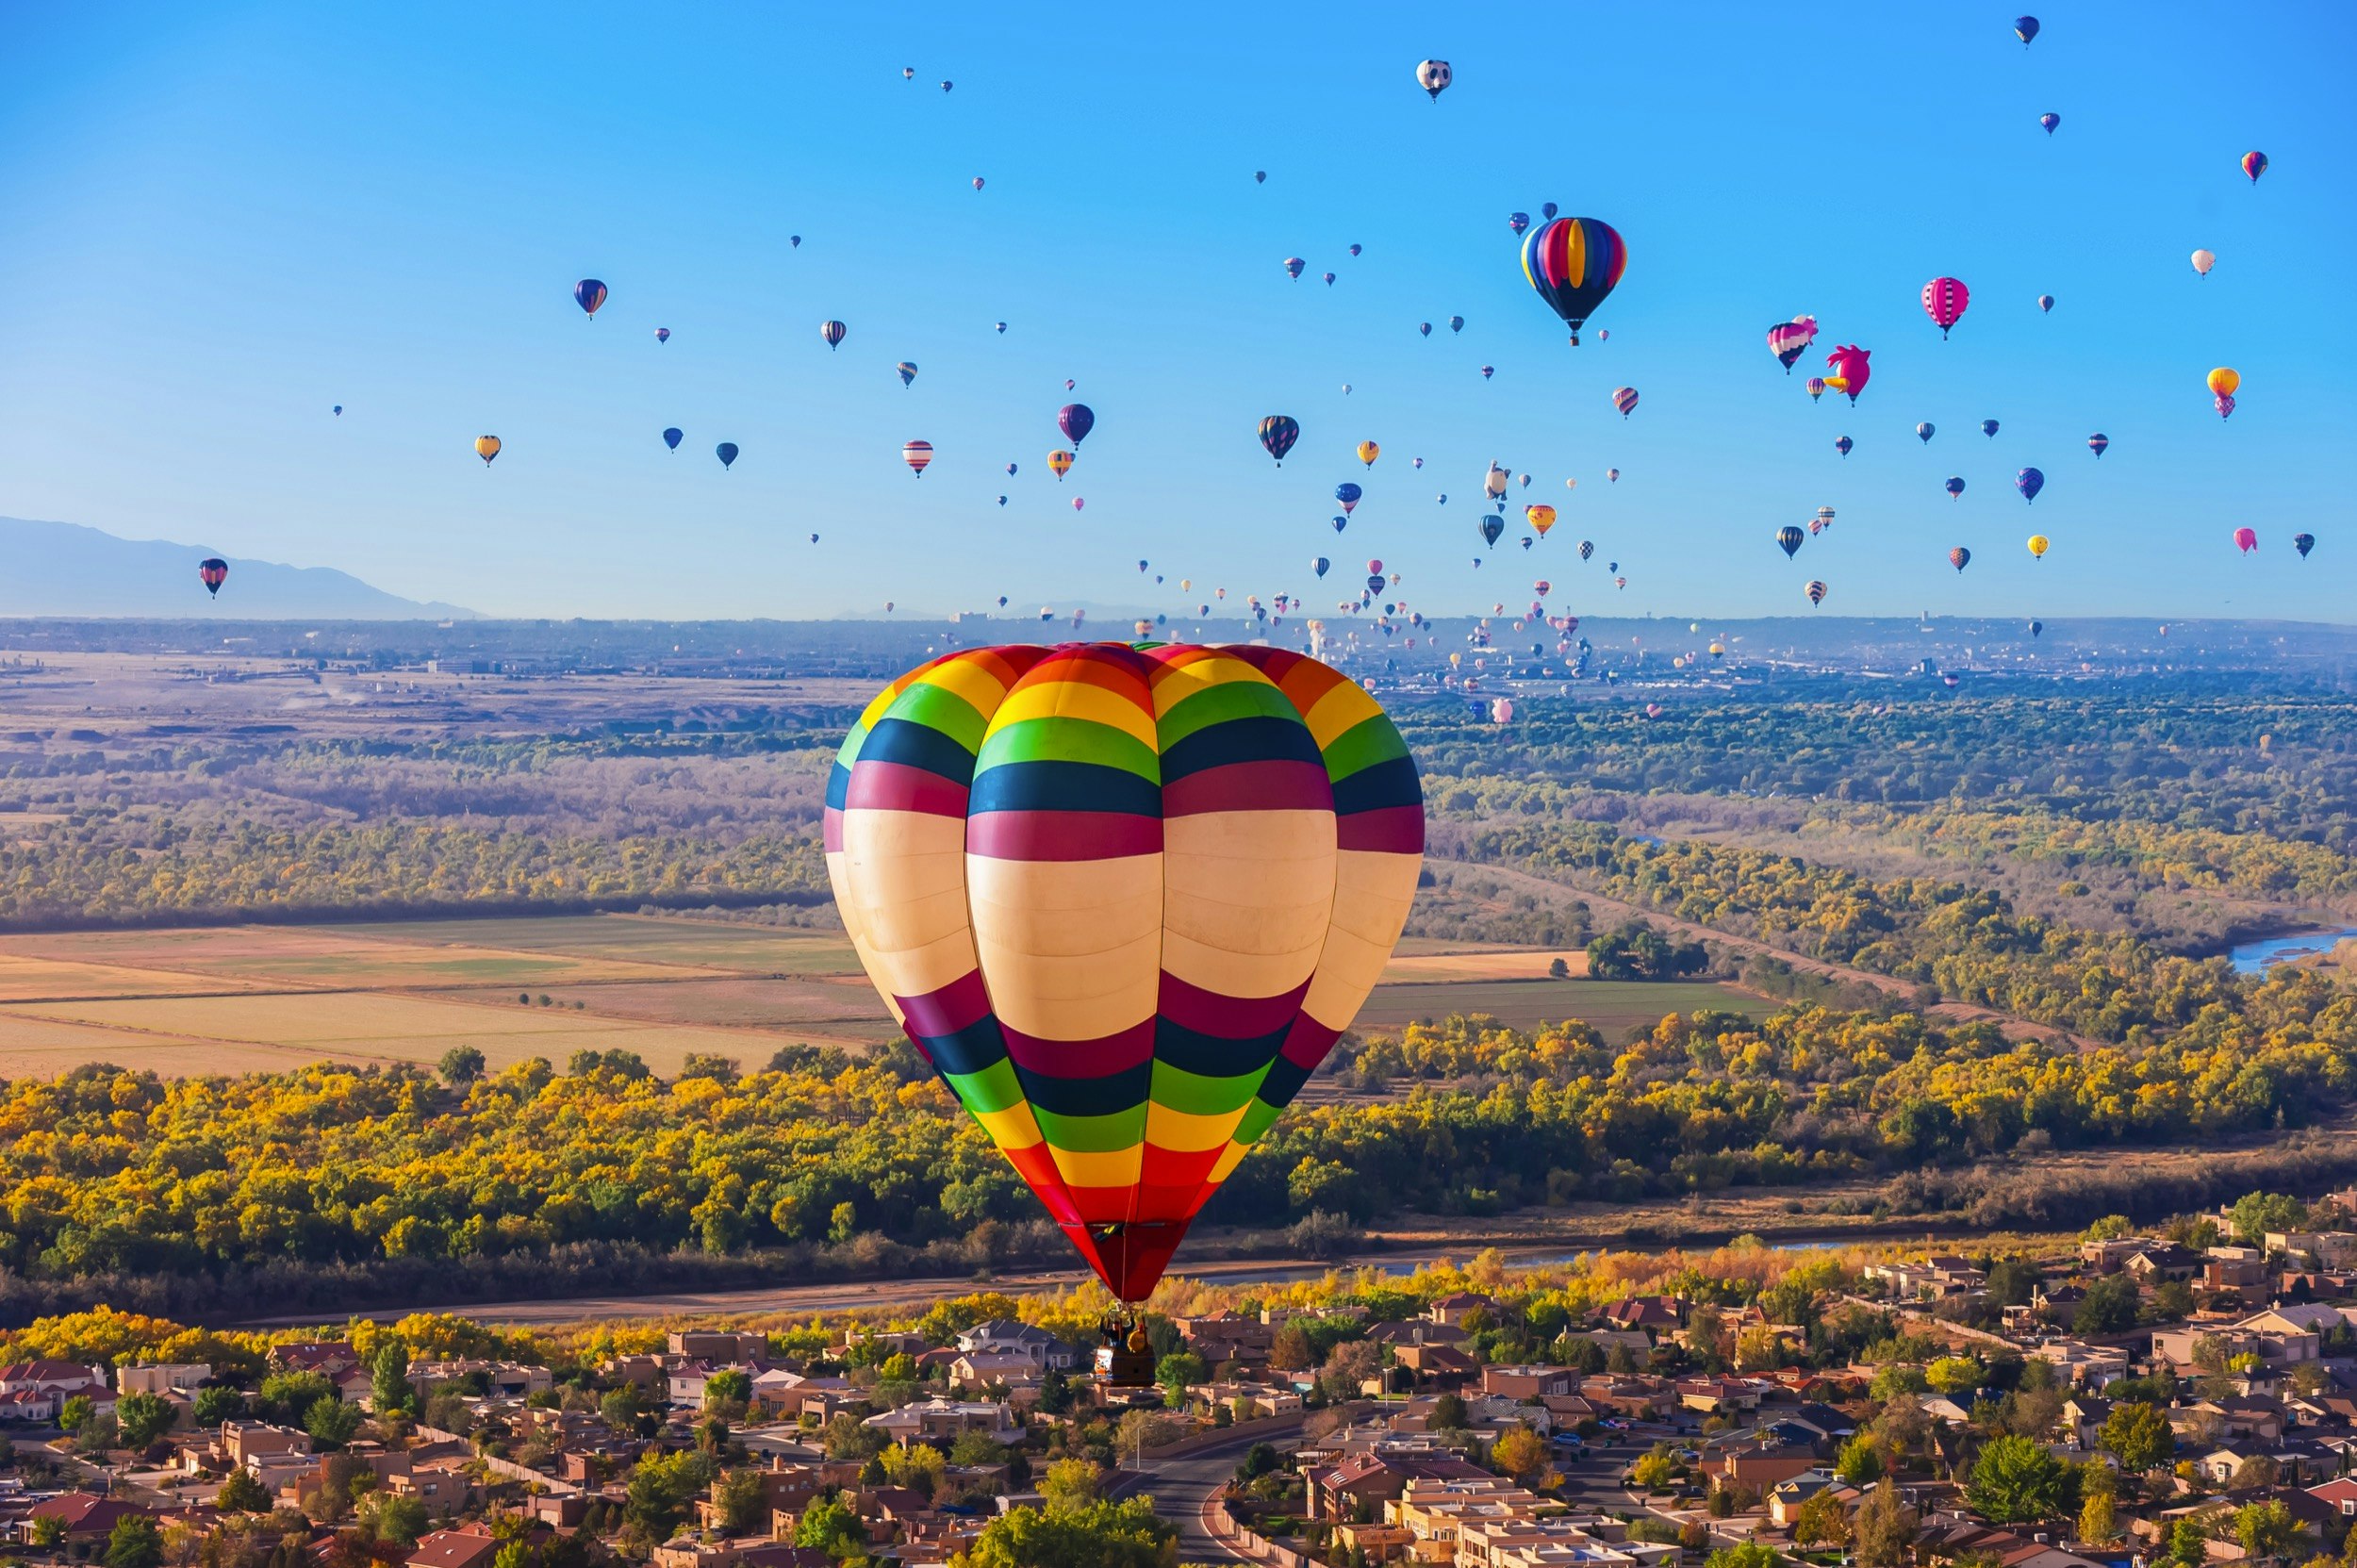 Aerial view, hot air balloons flying during the Albuquerque International Balloon Fiesta, Albuquerque, New Mexico USA.